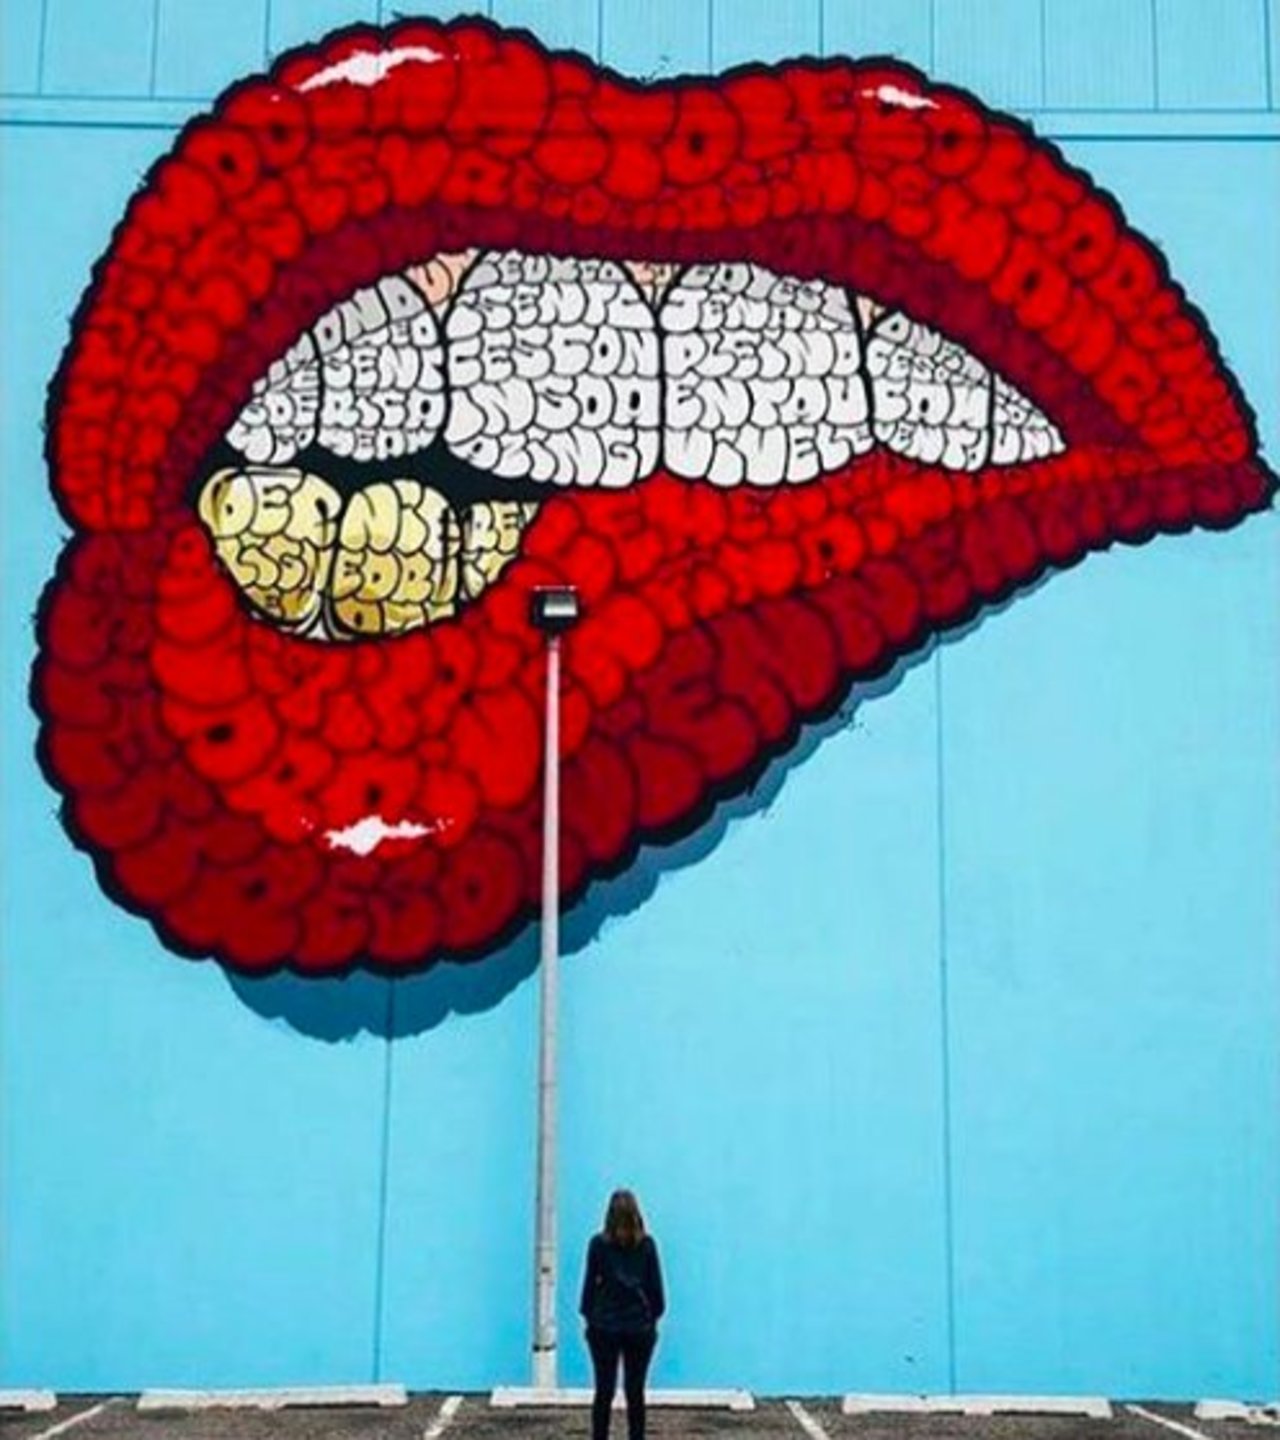 A cool large-scale piece by #Tilt! -- #globalstreetart #streetart #art #graffiti https://t.co/oQTc9r8wXi